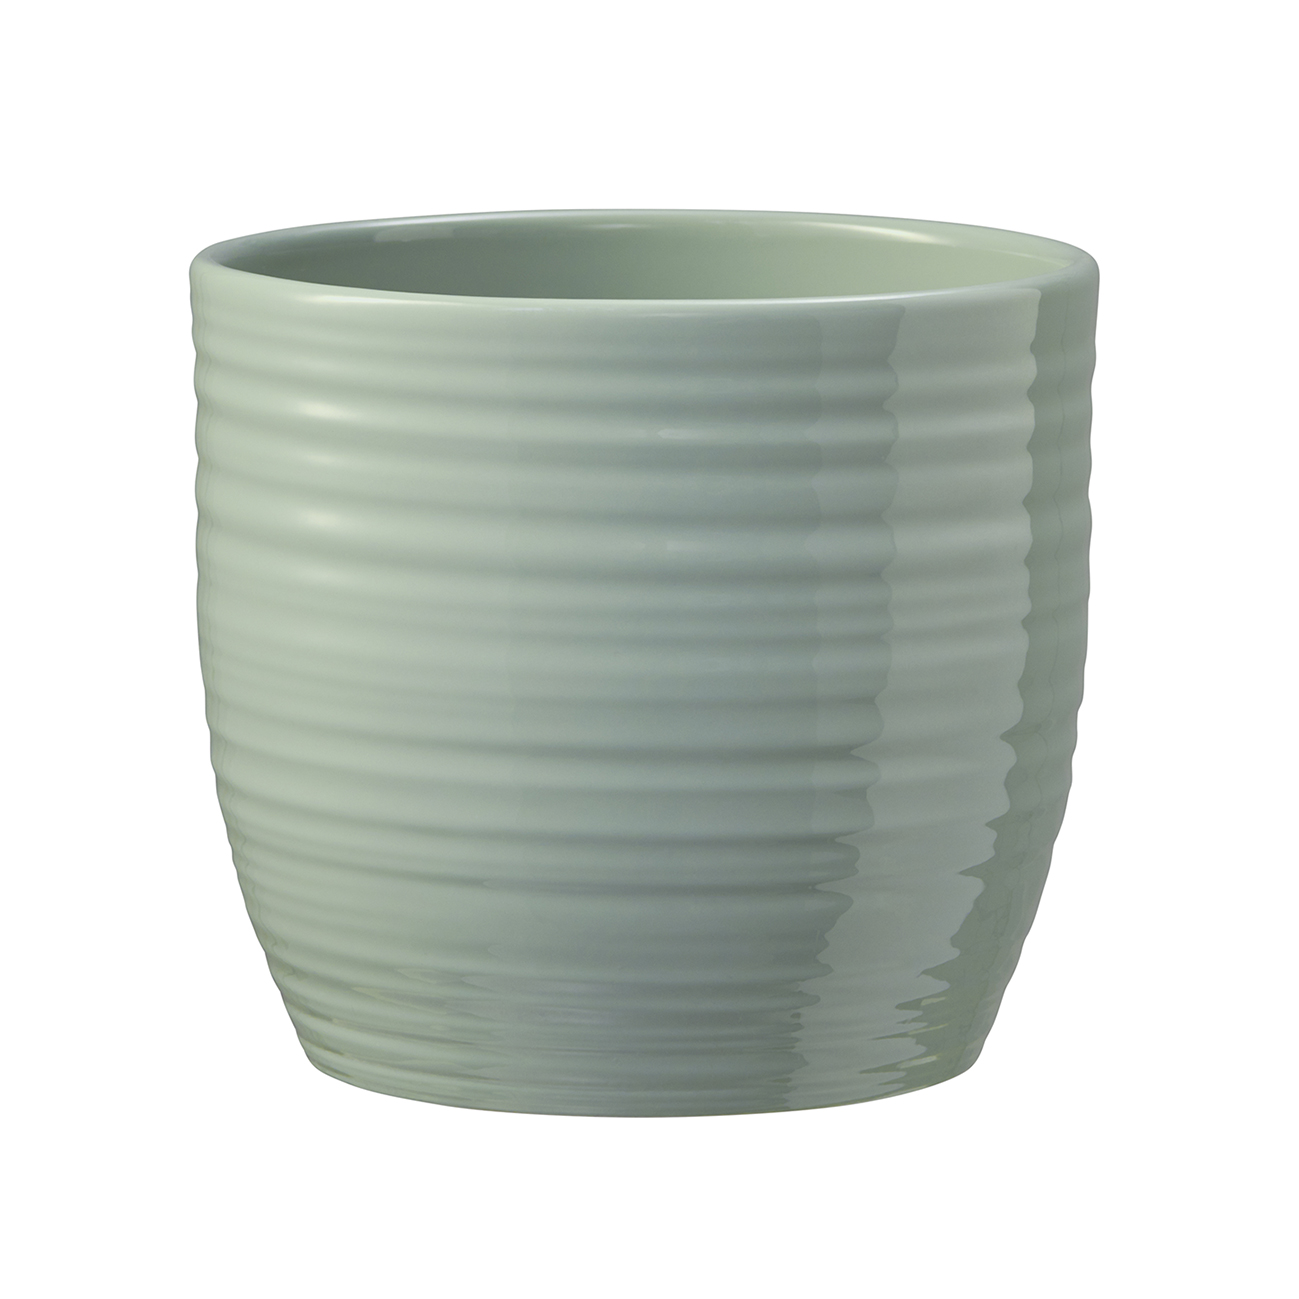 Ghiveci SK Bergamo Pure, ceramica, vernil, diametru 14 cm, 12.5 cm 12.5